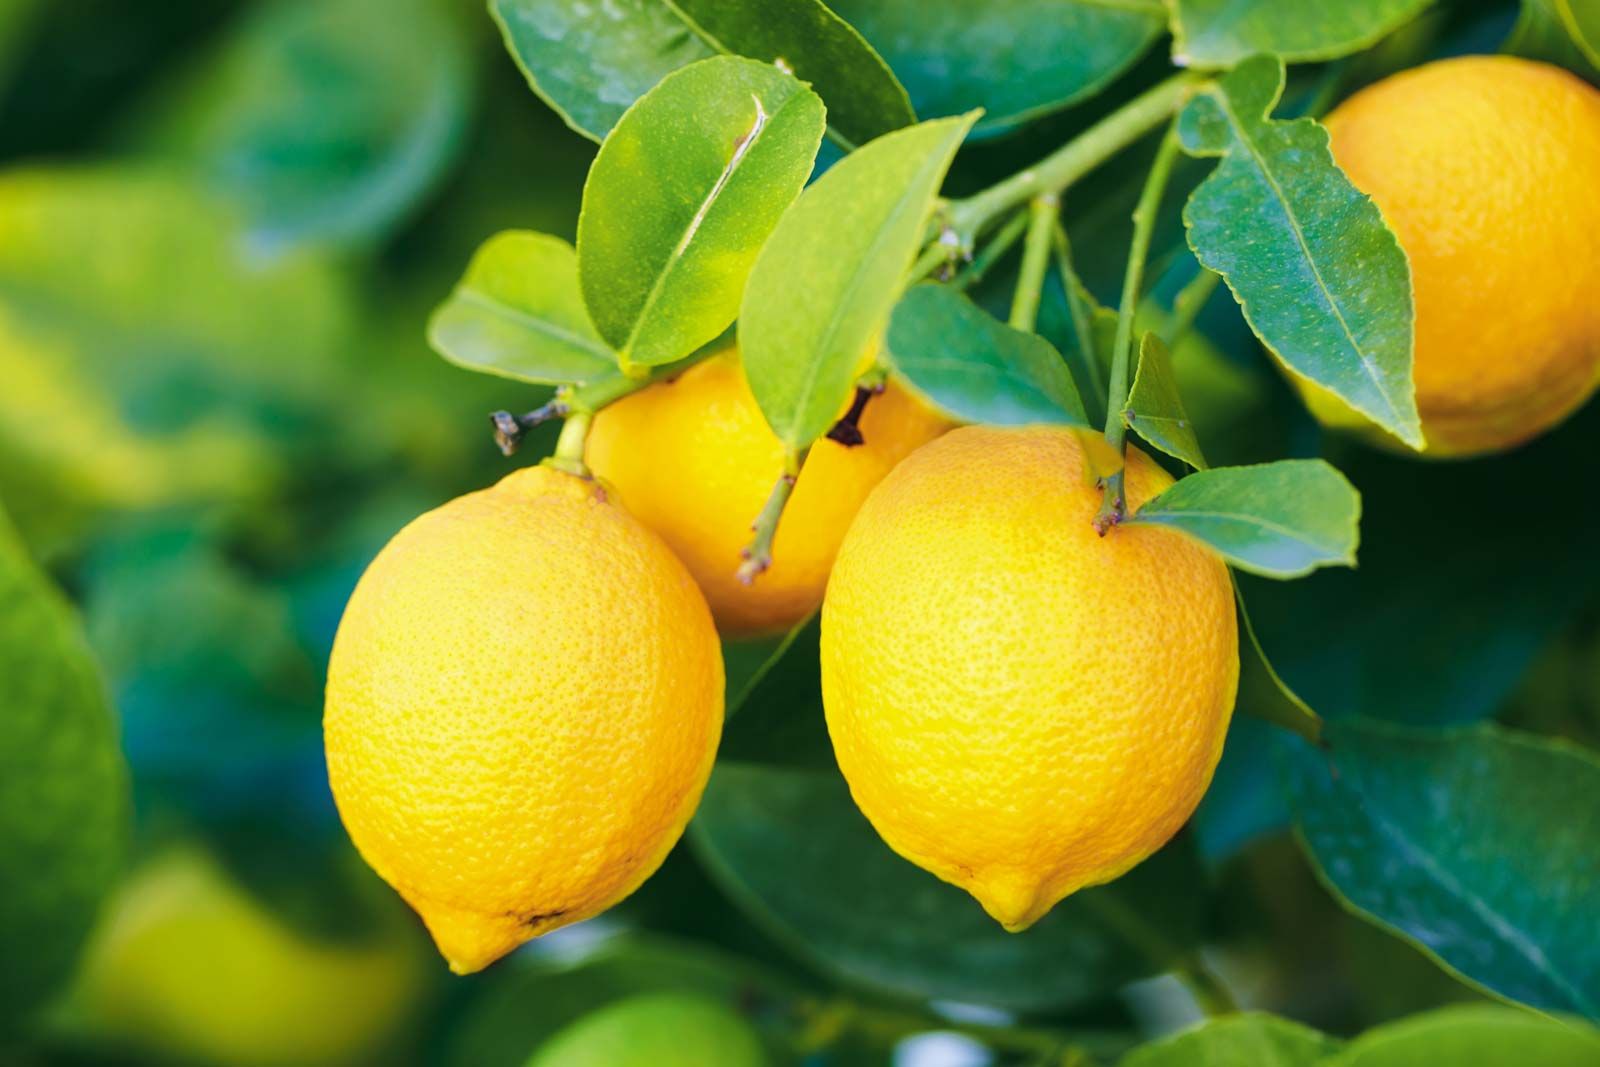 Lemon | Definition, Nutrition, Uses, & Facts | Britannica